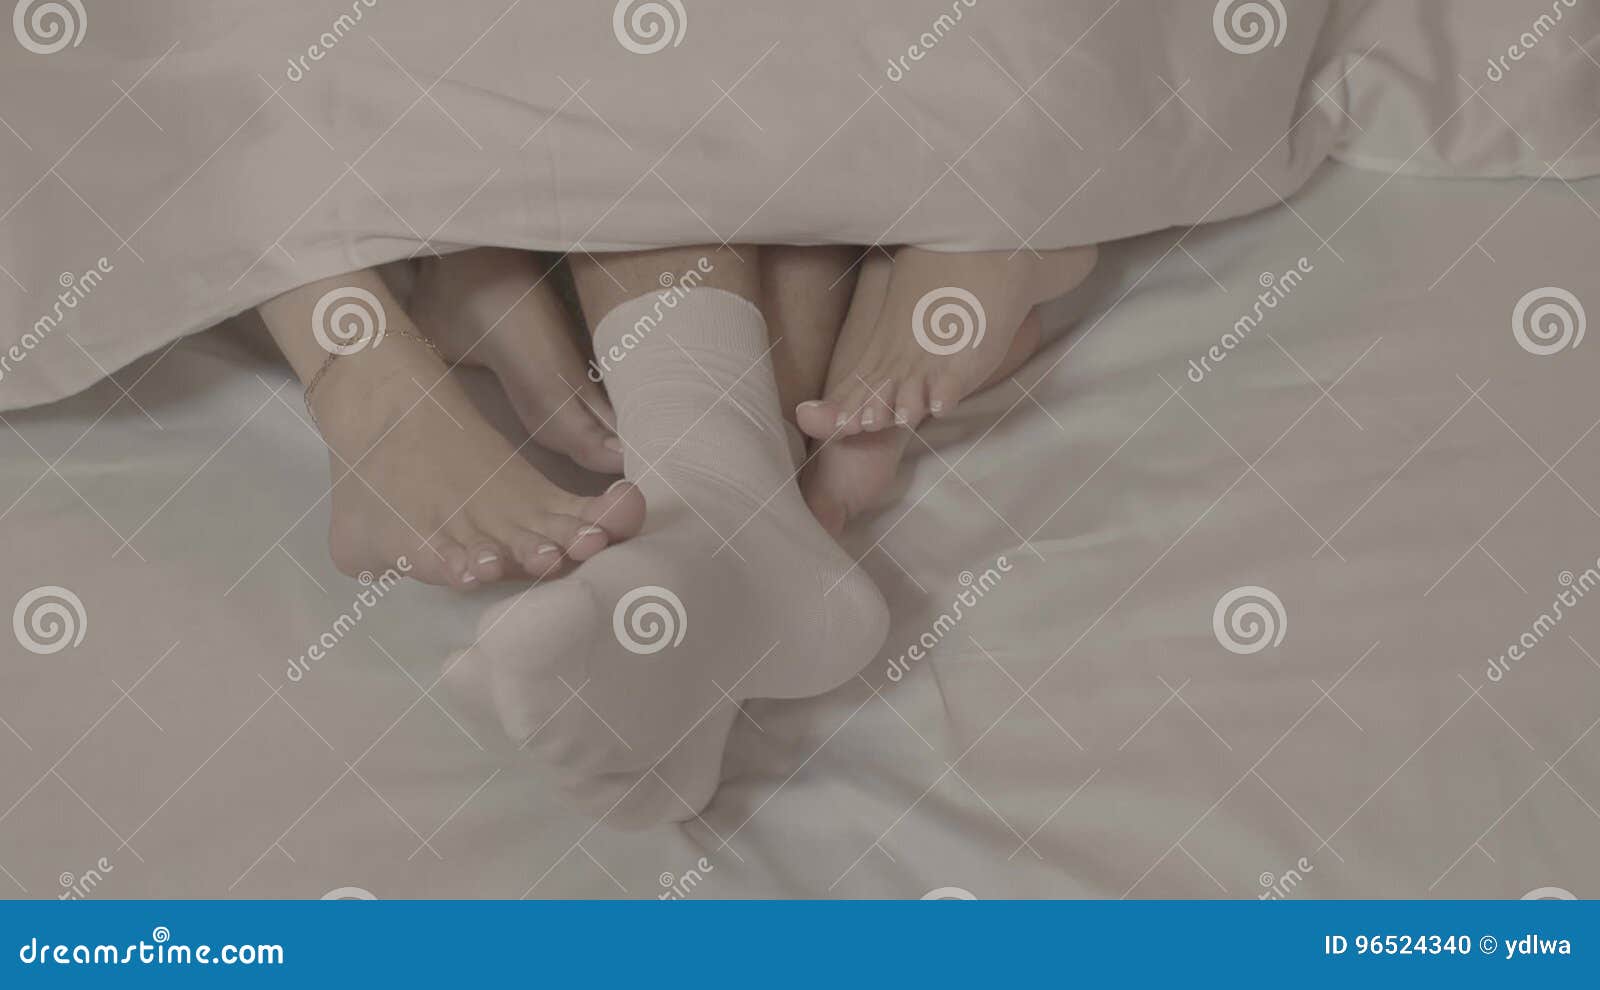 Costume de laçage des mains et des pieds attachés au lit des femmes, 